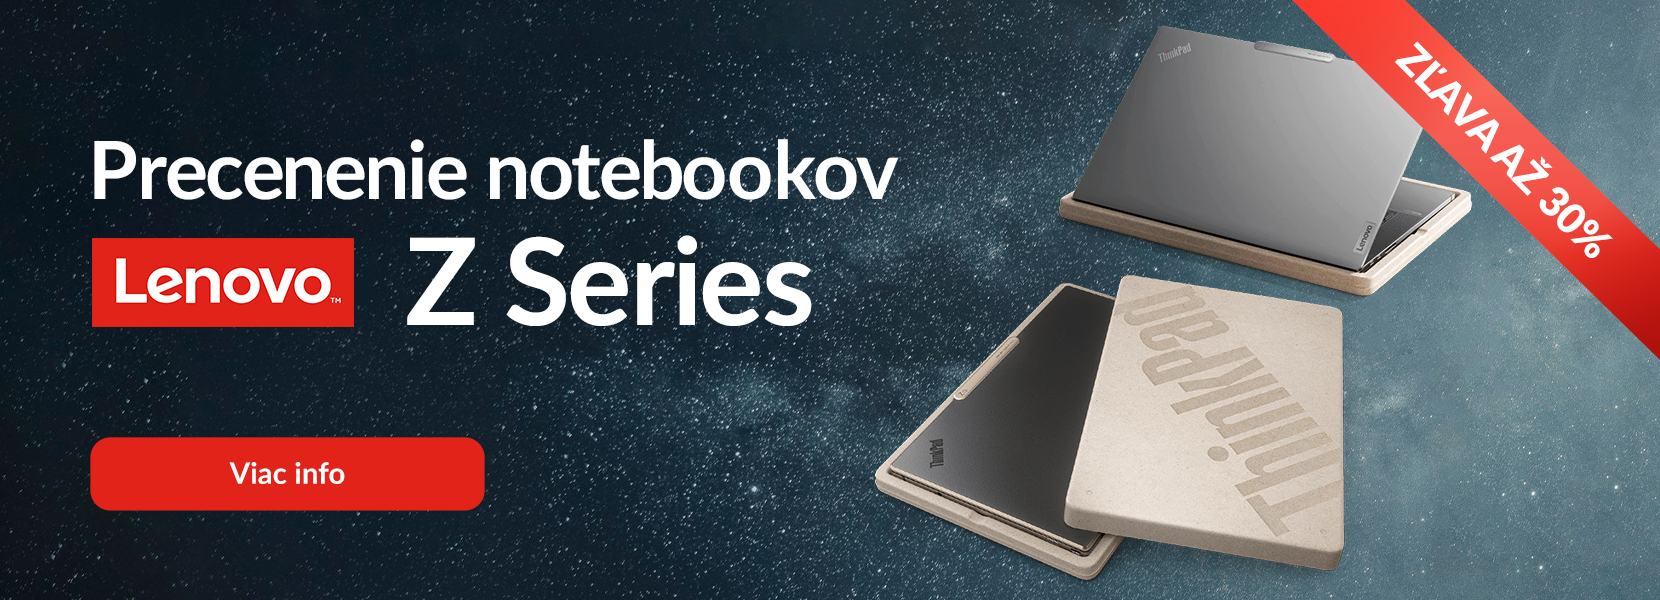 Precenenie notebookov Lenovo Z Series